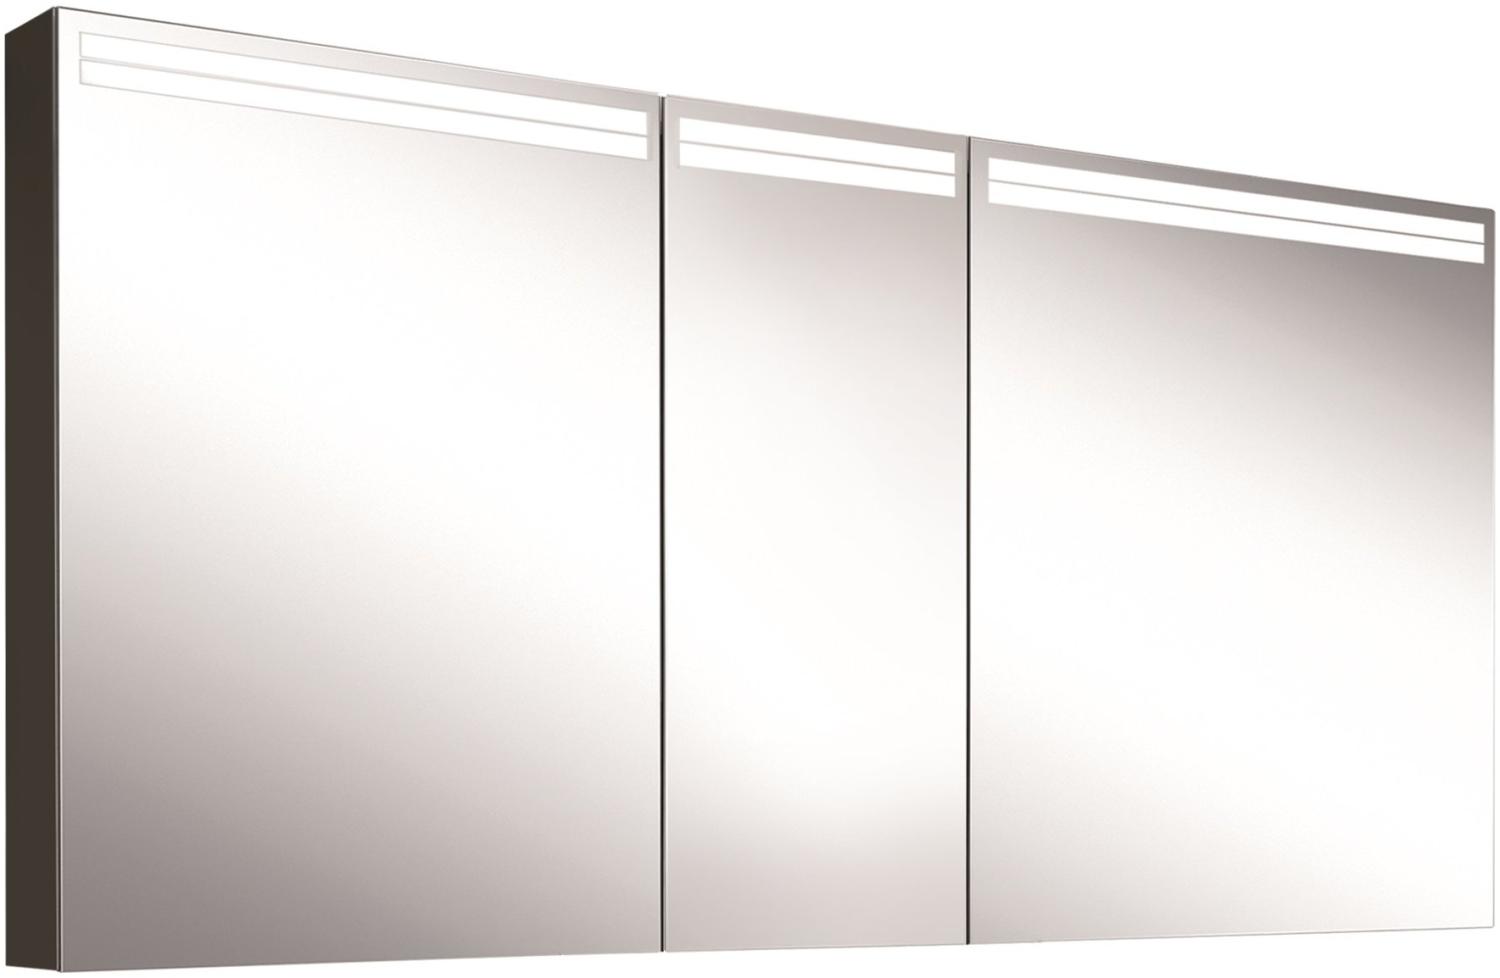 Schneider ARANGALINE LED Lichtspiegelschrank, 3 Doppelspiegeltüren, 150x70x12cm, 160. 550. 02. 41, Ausführung: EU-Norm/Korpus schwarz matt - 160. 550. 02. 41 Bild 1